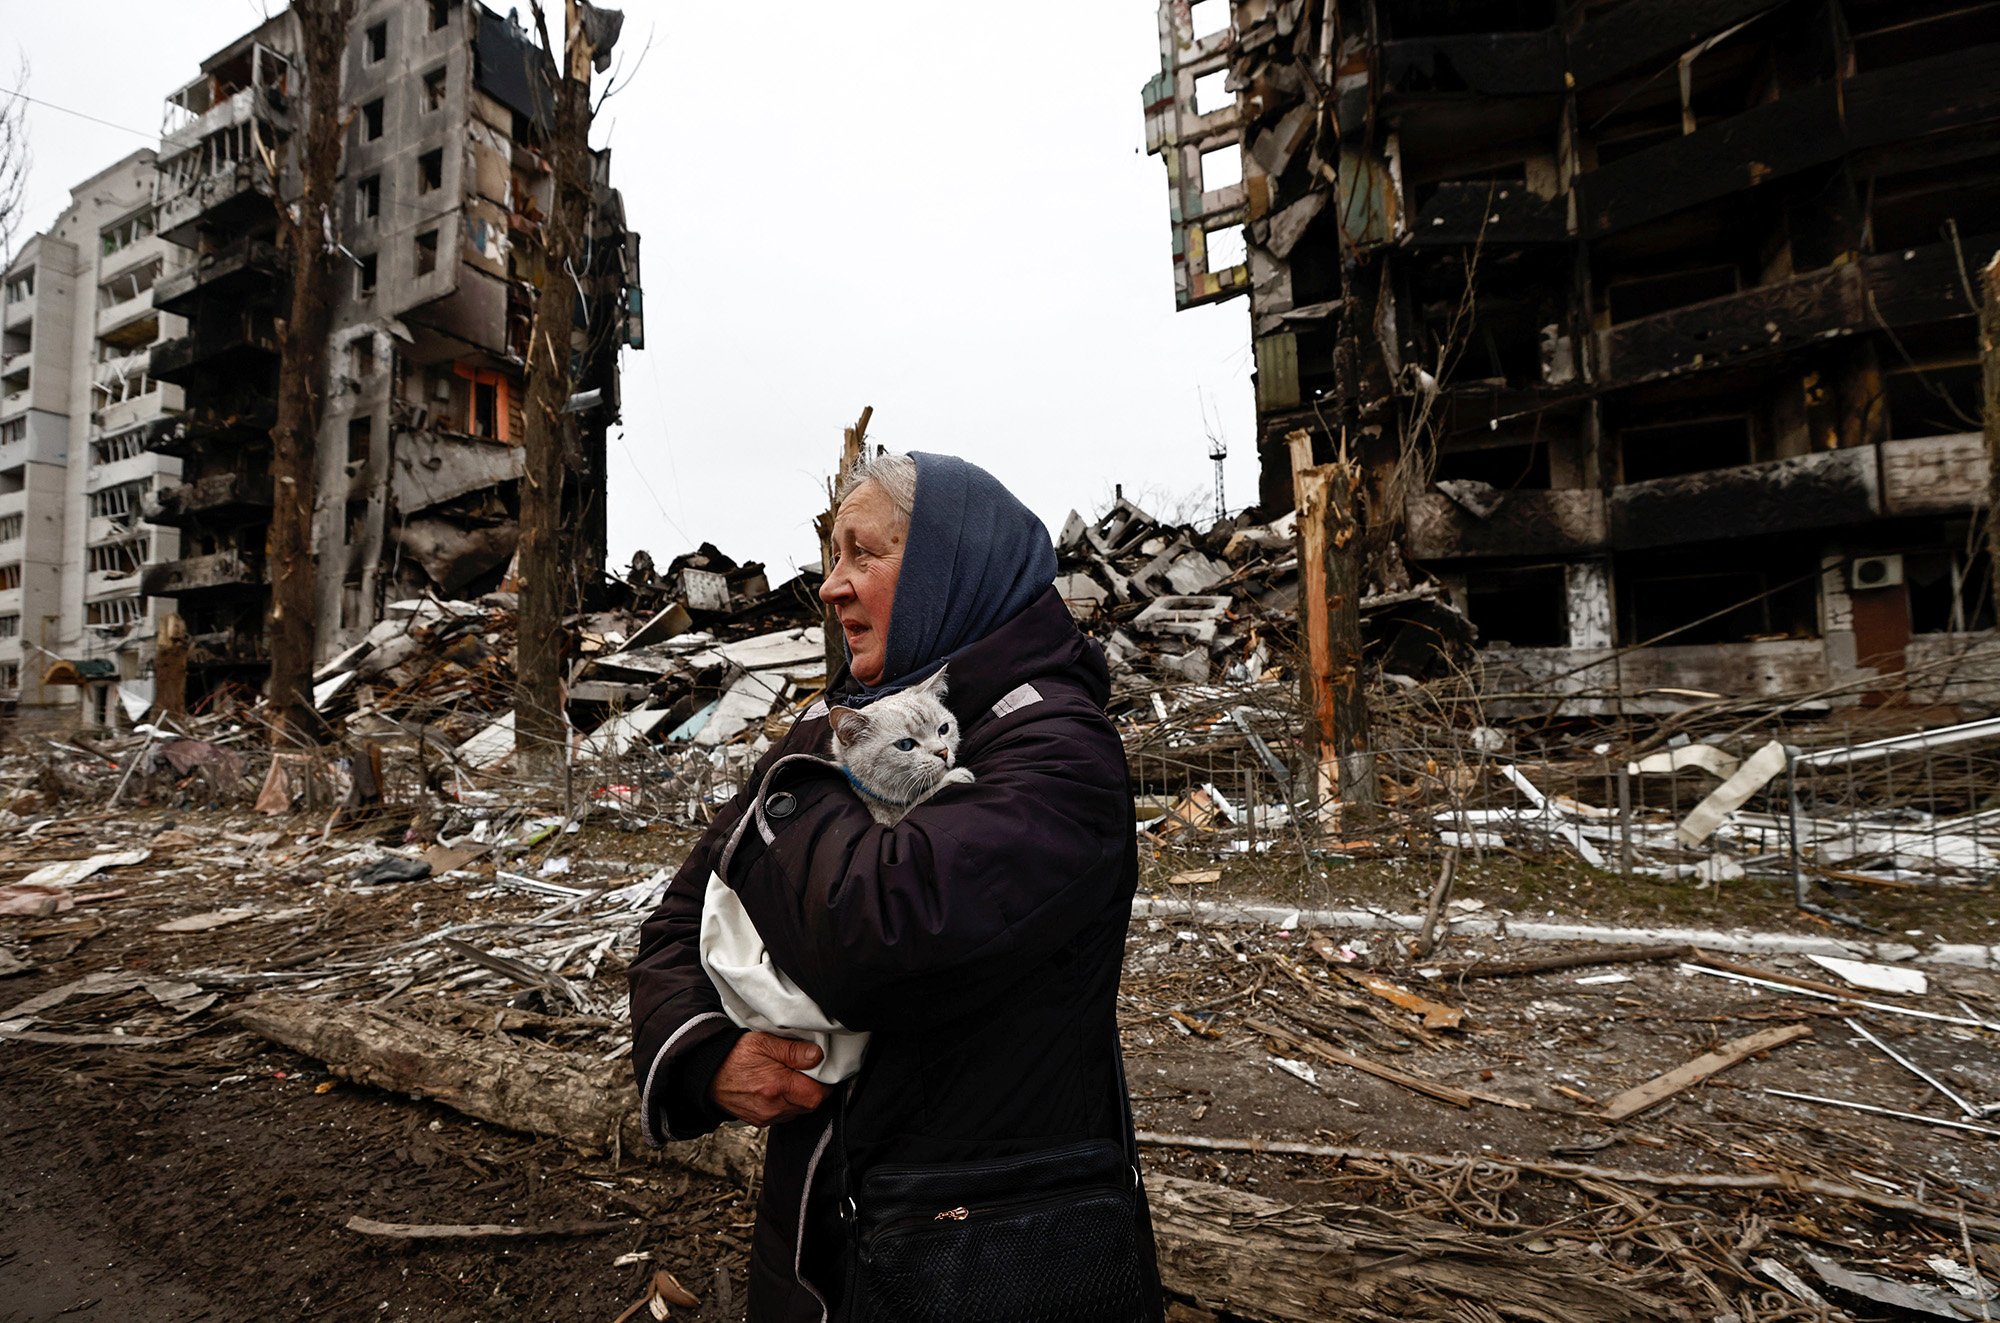 Оповідання про високоточну зброю – це все байки: будинки бомбили 500 кілограмовими бомбами, - каже Володимир. Фото: REUTERS/Zohra Bensemra